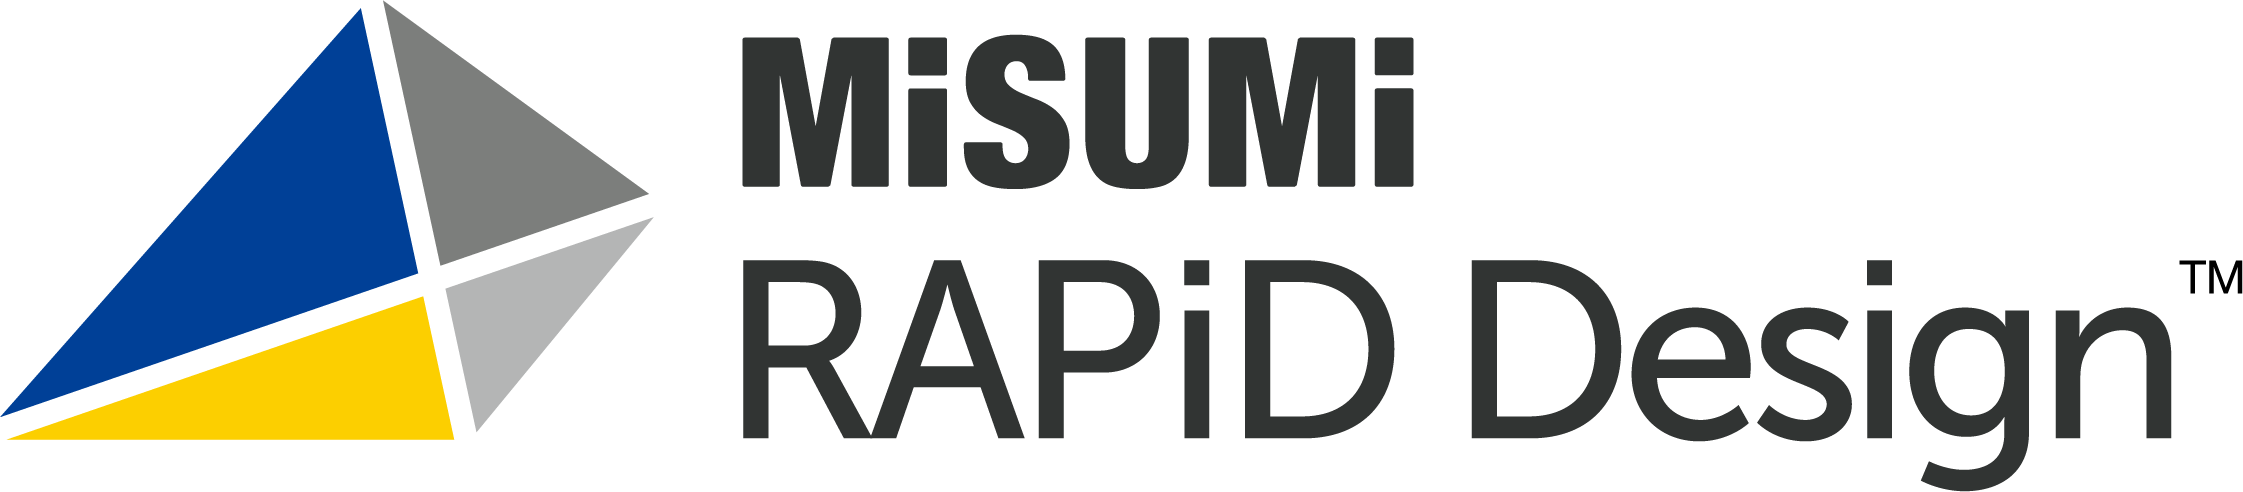 RapidDesign-LogoTM.png